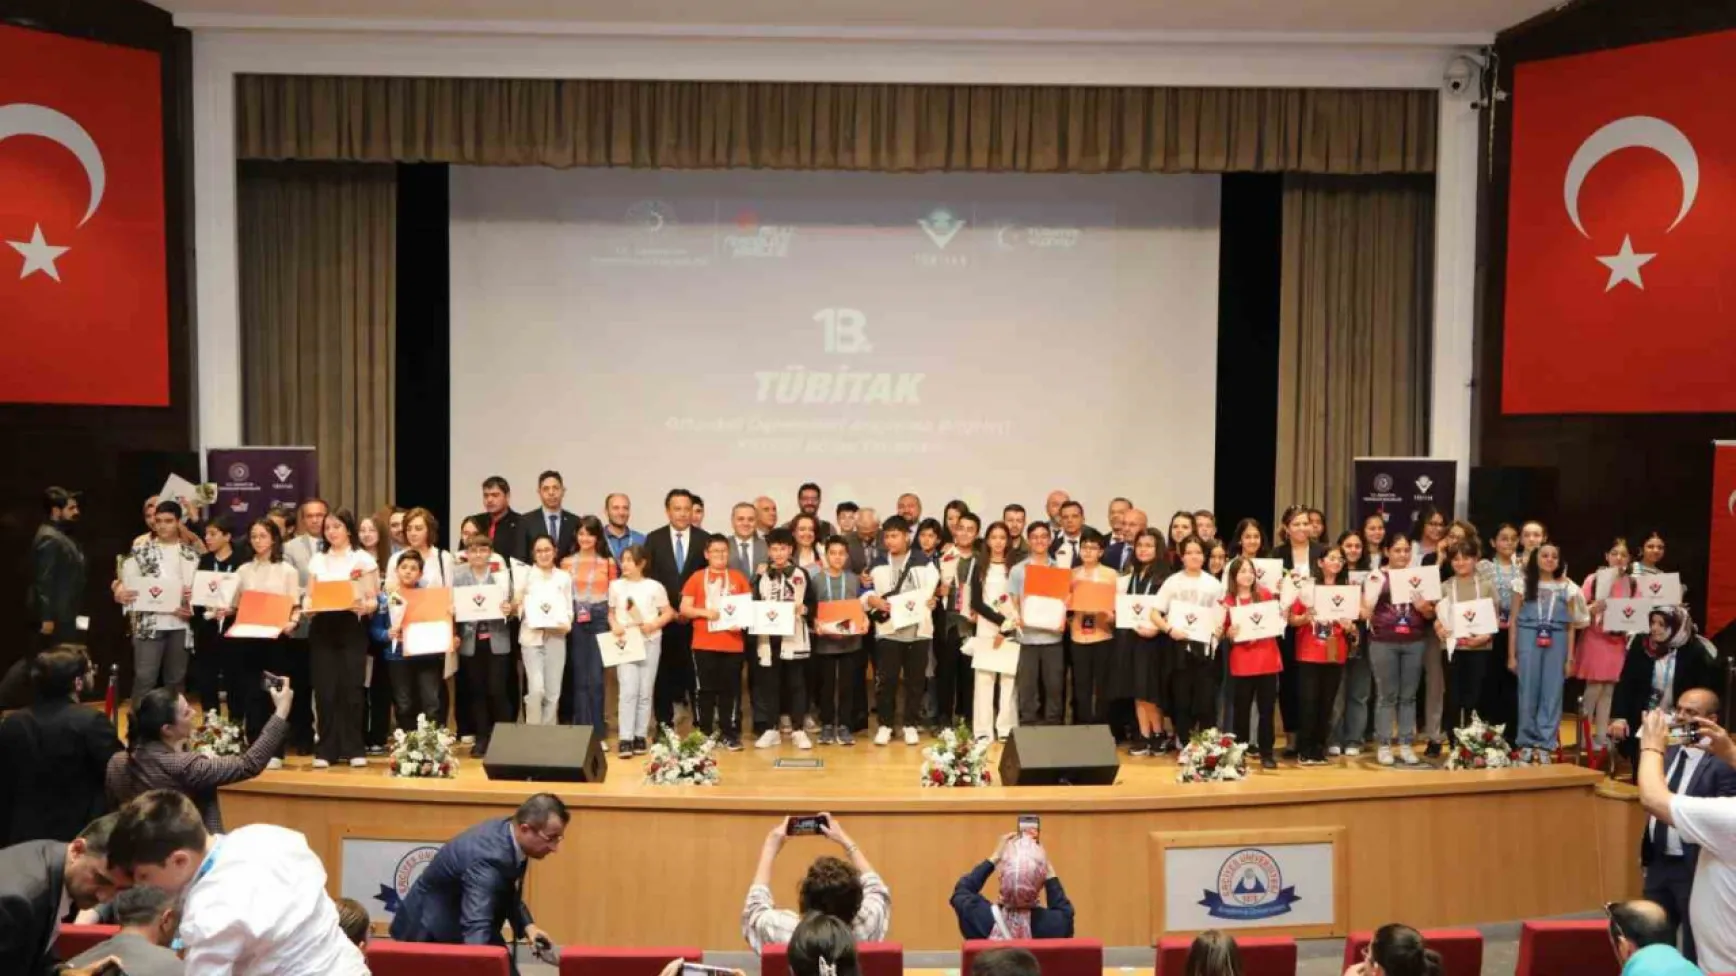 Ortaokul Öğrencilerinin Tübitak proje ödülleri Erü'de verildi